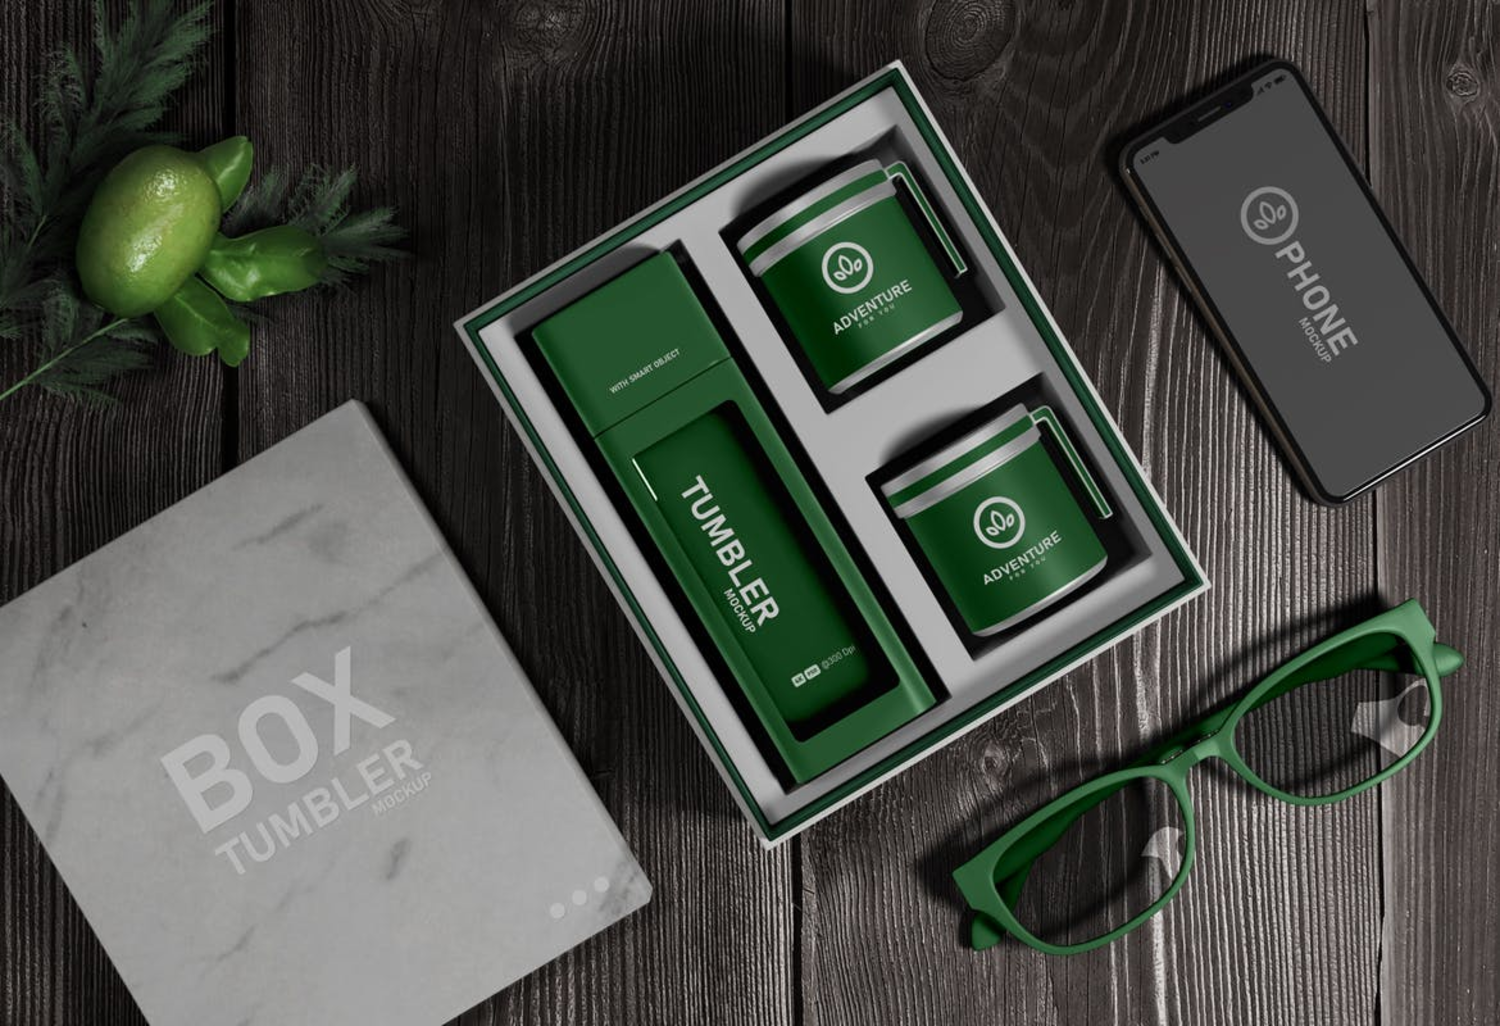 5002 3款水杯茶杯文创礼盒包装设计PS样机 Tumbler Set – Realistic Packaging Mockup@GOOODME.COM